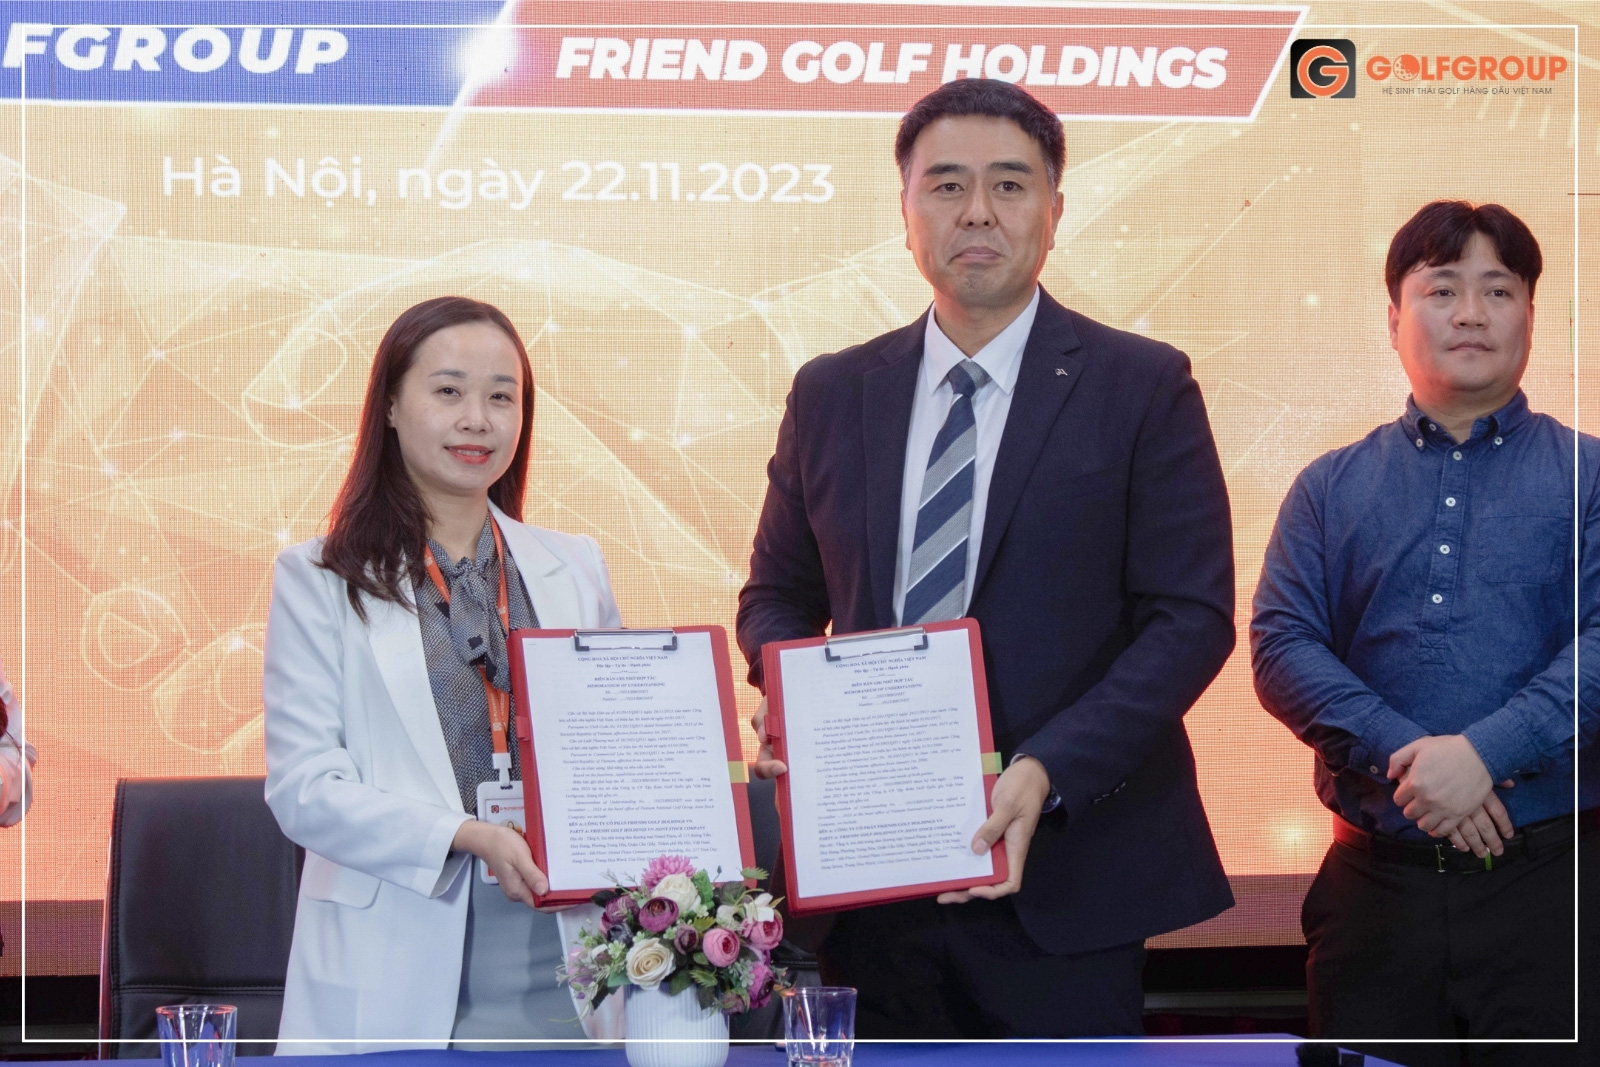 P.TGĐ Đinh Thị Quỳnh Trang, đại diện GolfGroup ký kết hợp tác với đại diện Friends Golf Holdings